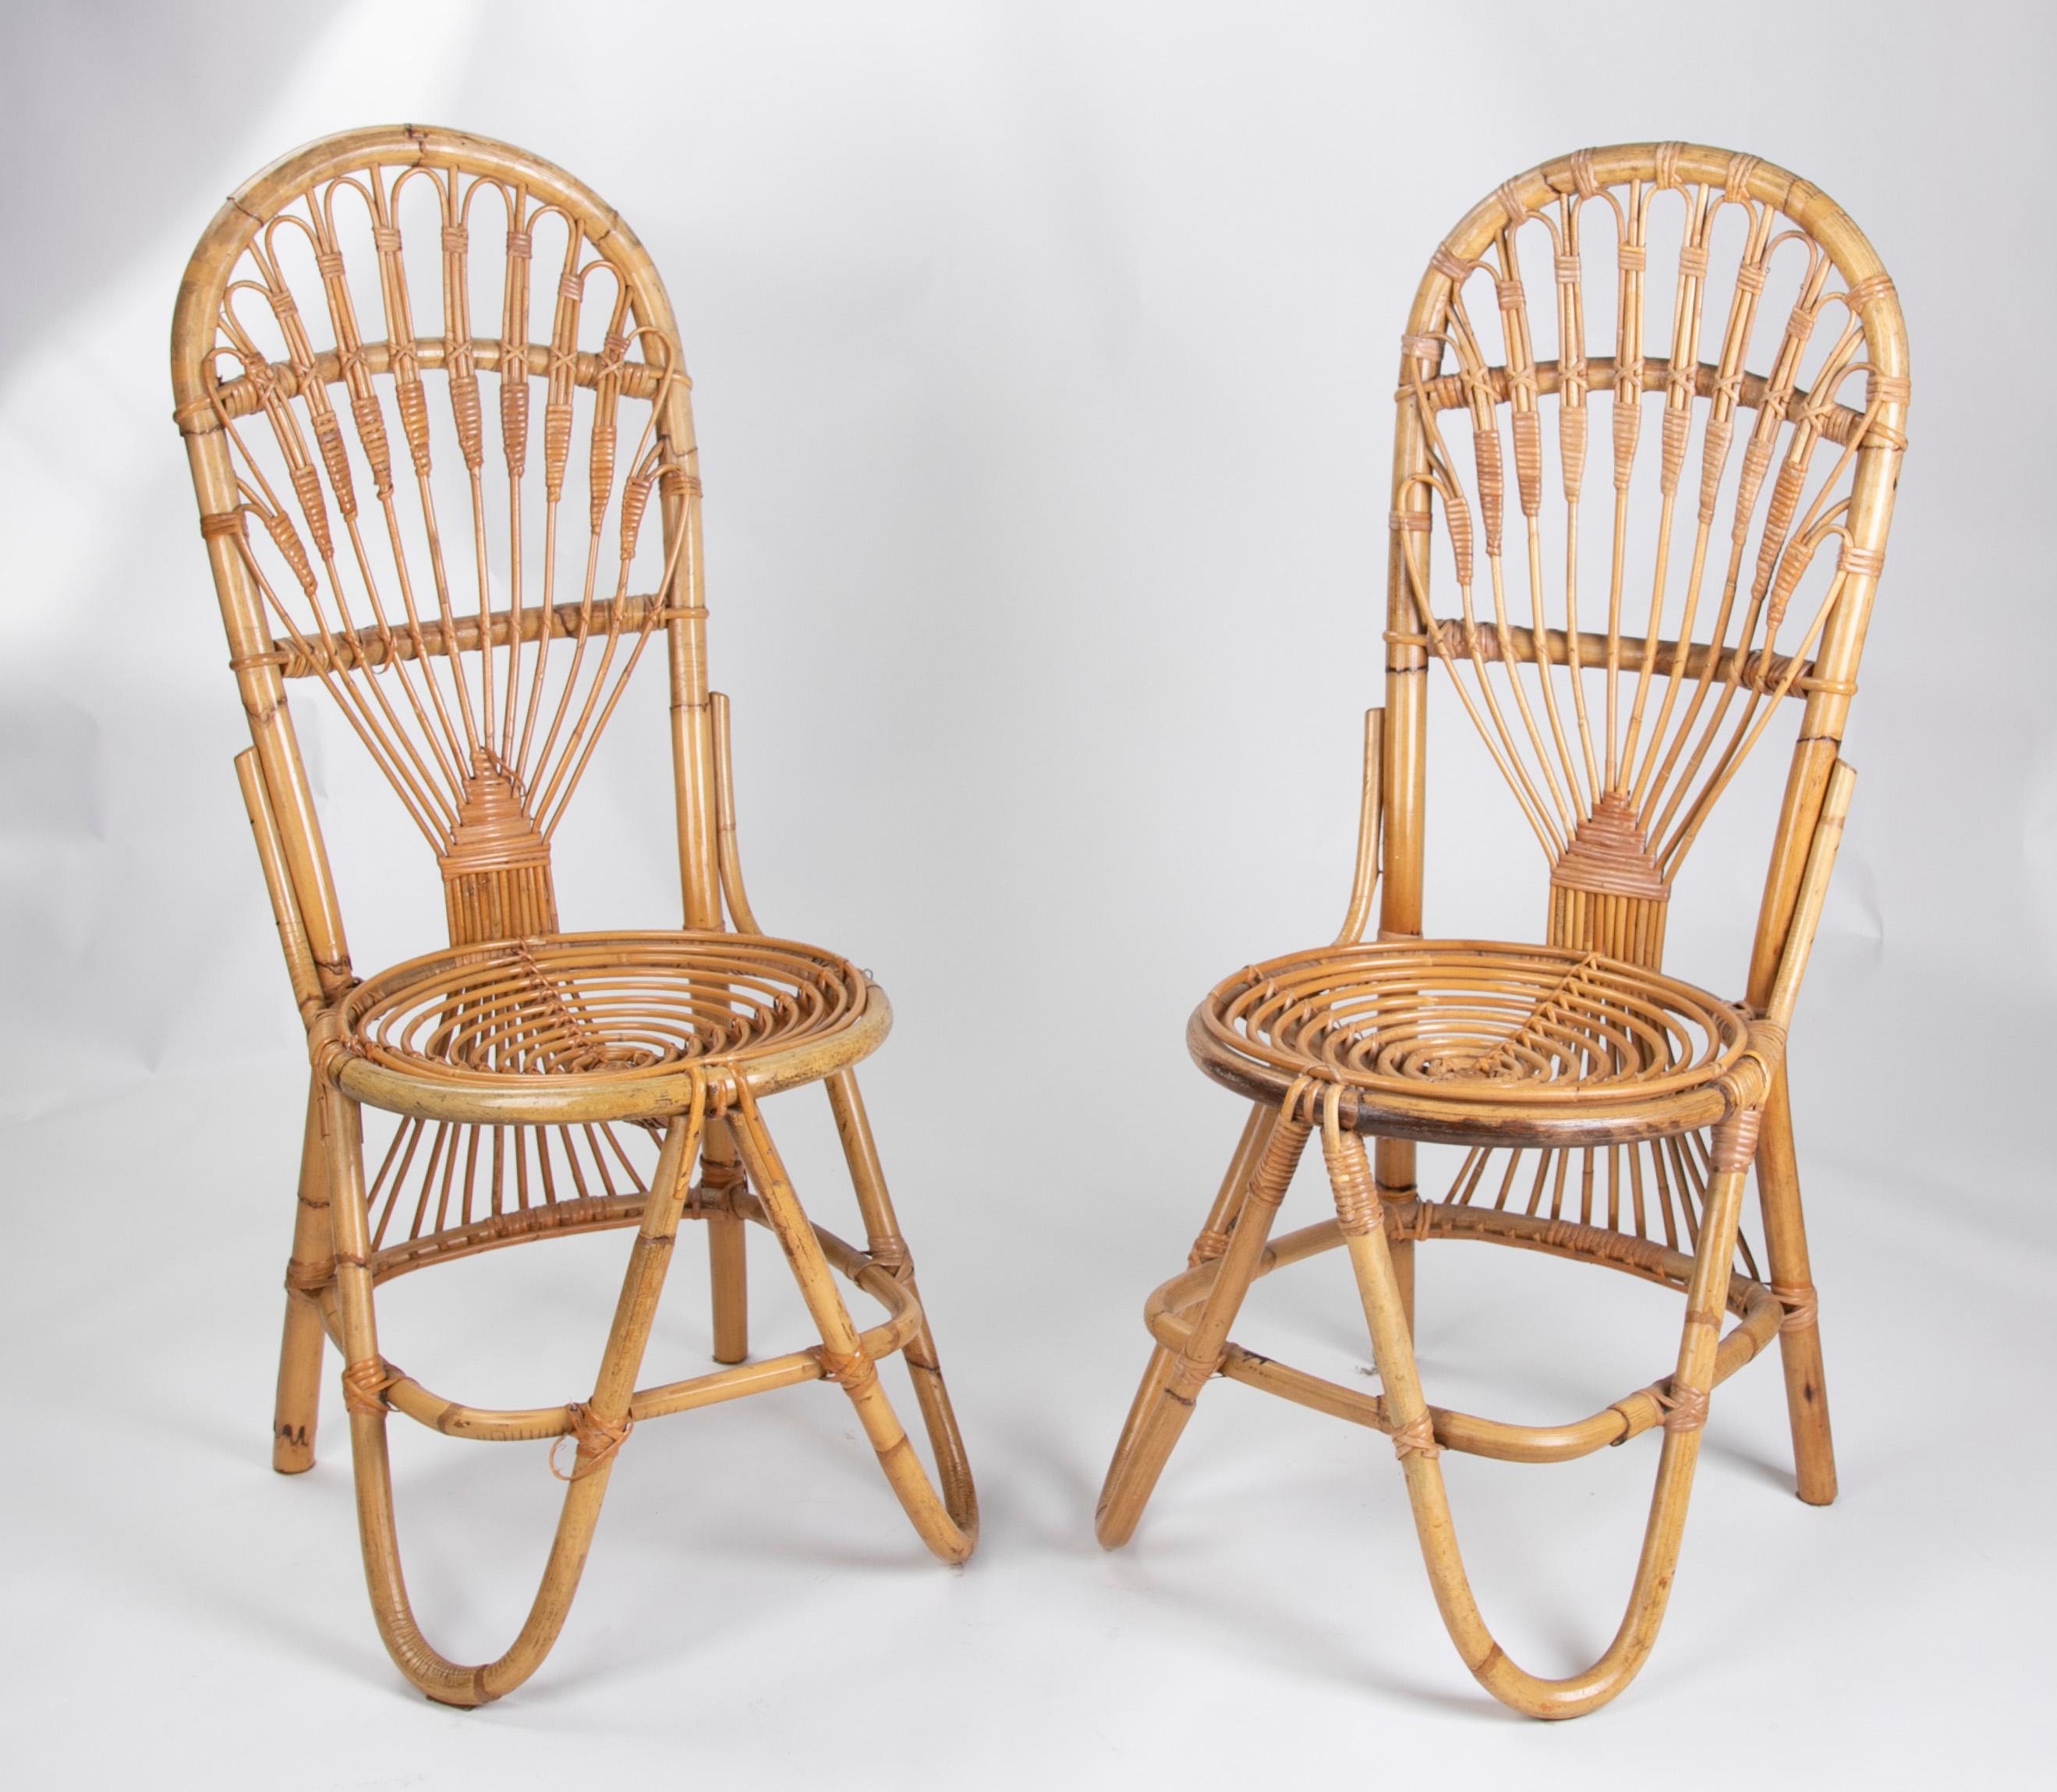 1970s Pair of handmade bamboo wicker chairs.